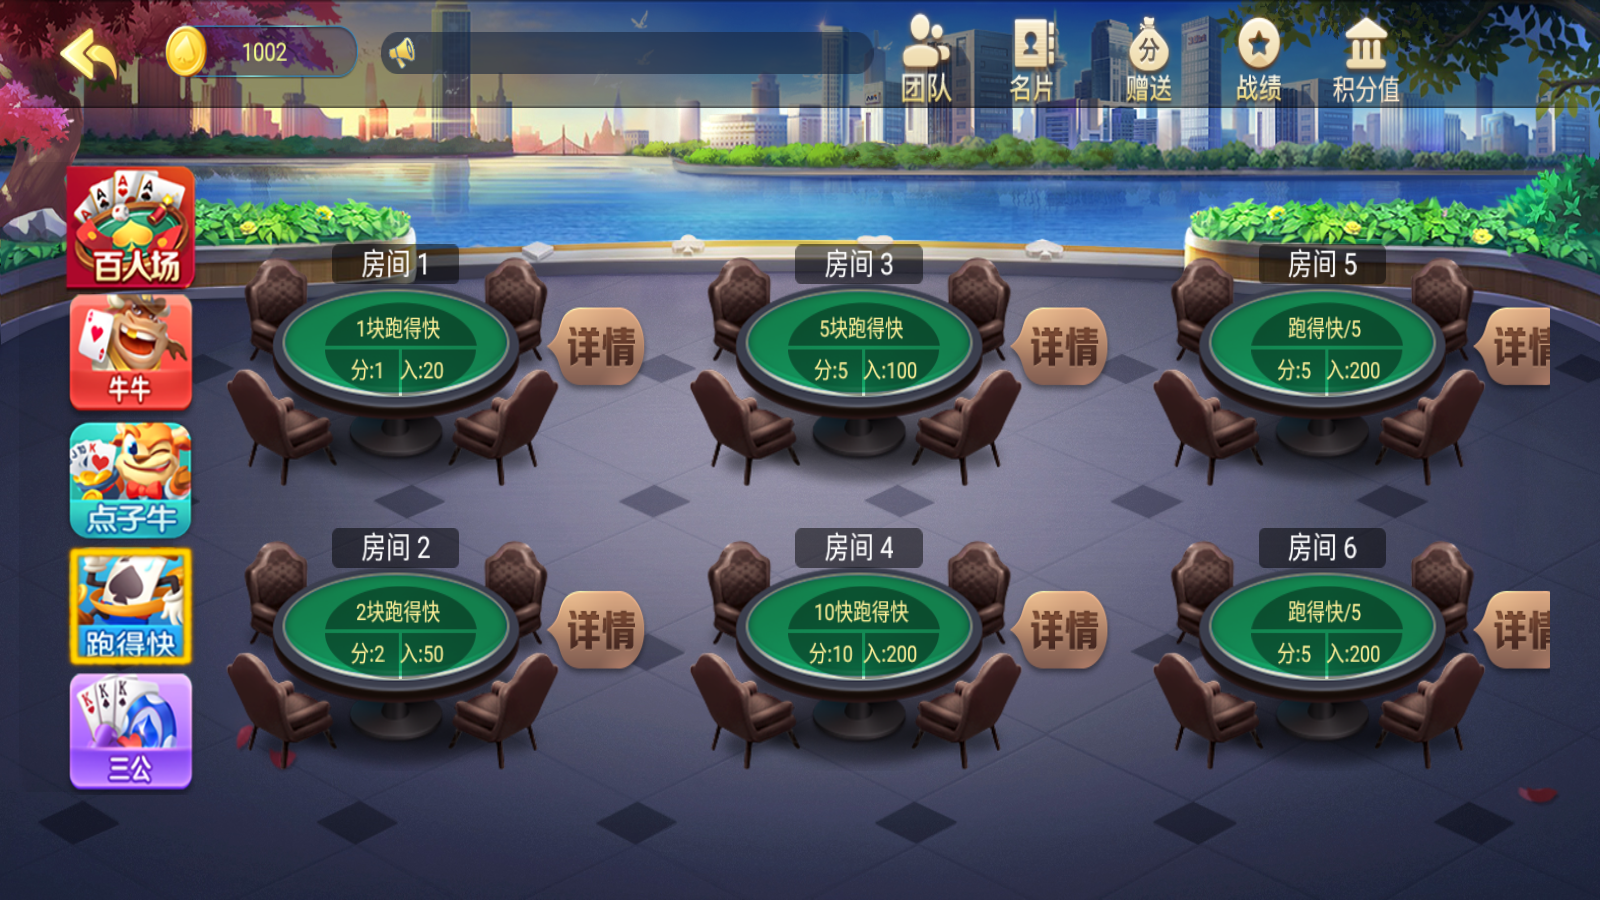 新版五游大联盟运营版棋牌组件 UI美观大方插图11